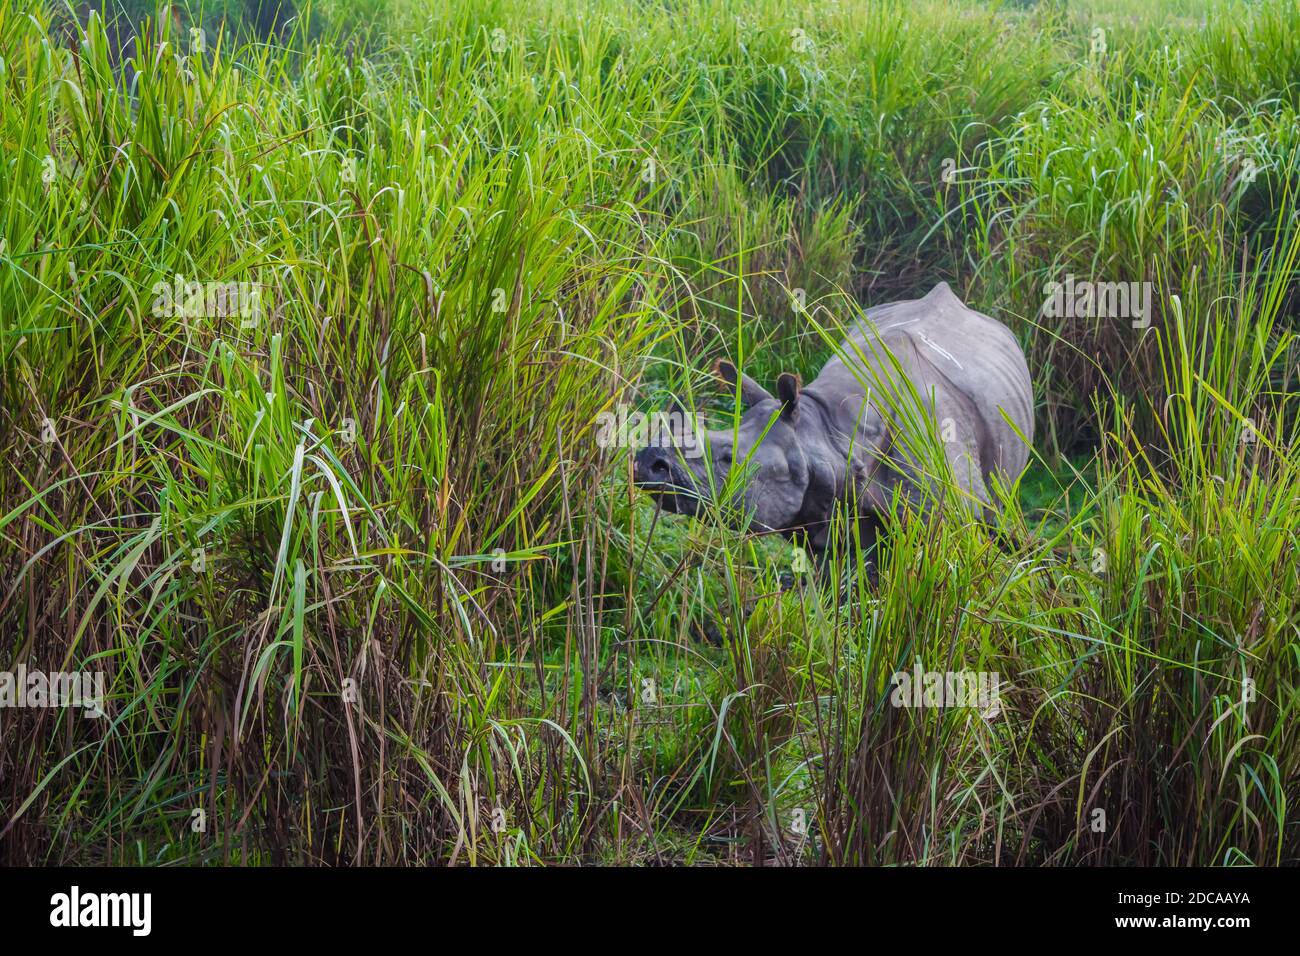 Indian one horned big rhinoceros in Kaziranga National Park - Assam, India Stock Photo